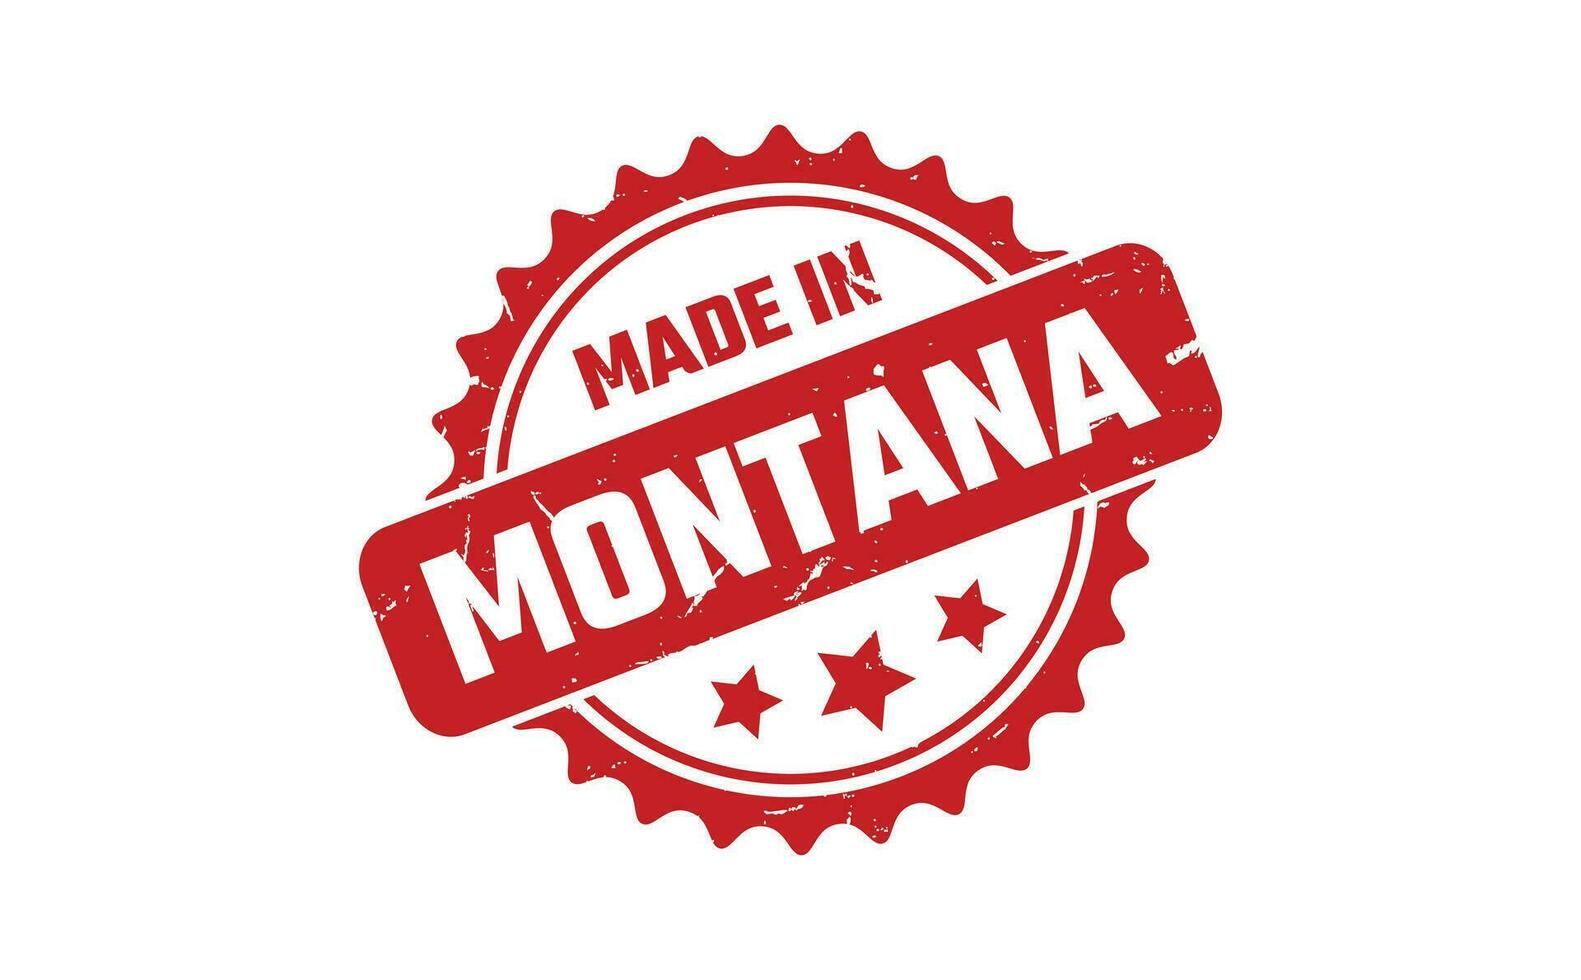 hecho en Montana caucho sello vector